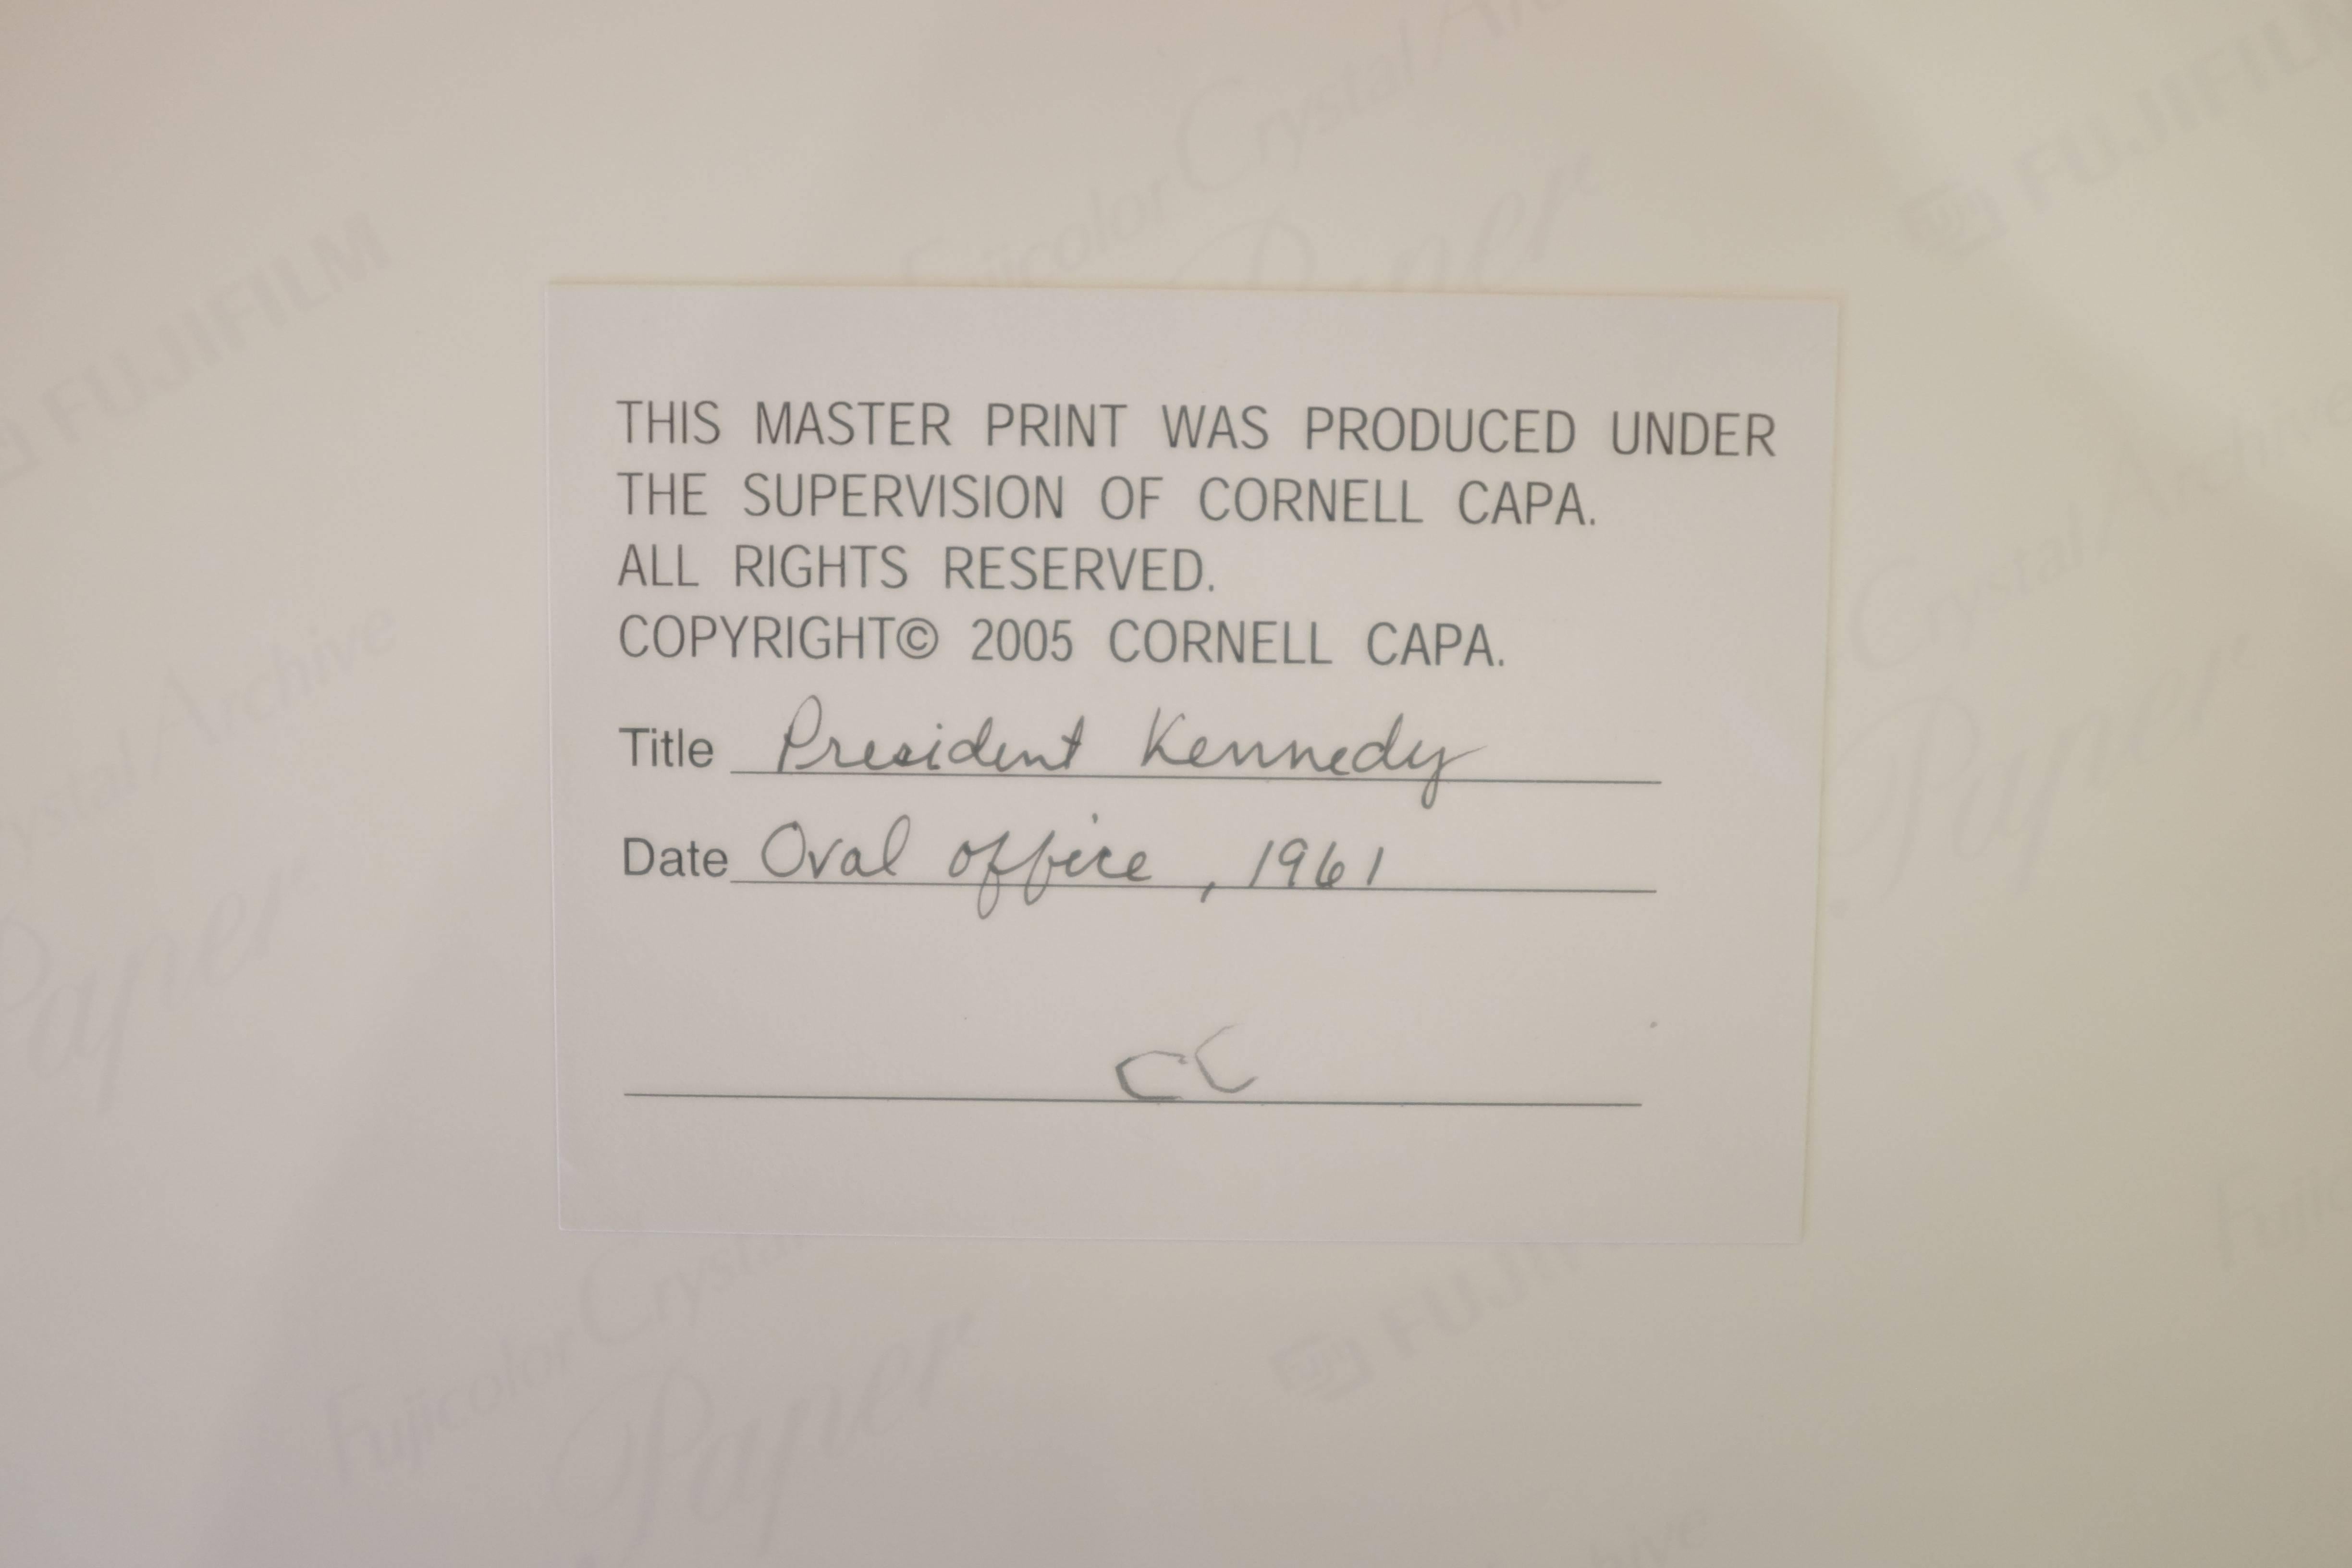 Le président Kennedy au bureau ovale - Photograph de Cornell Capa